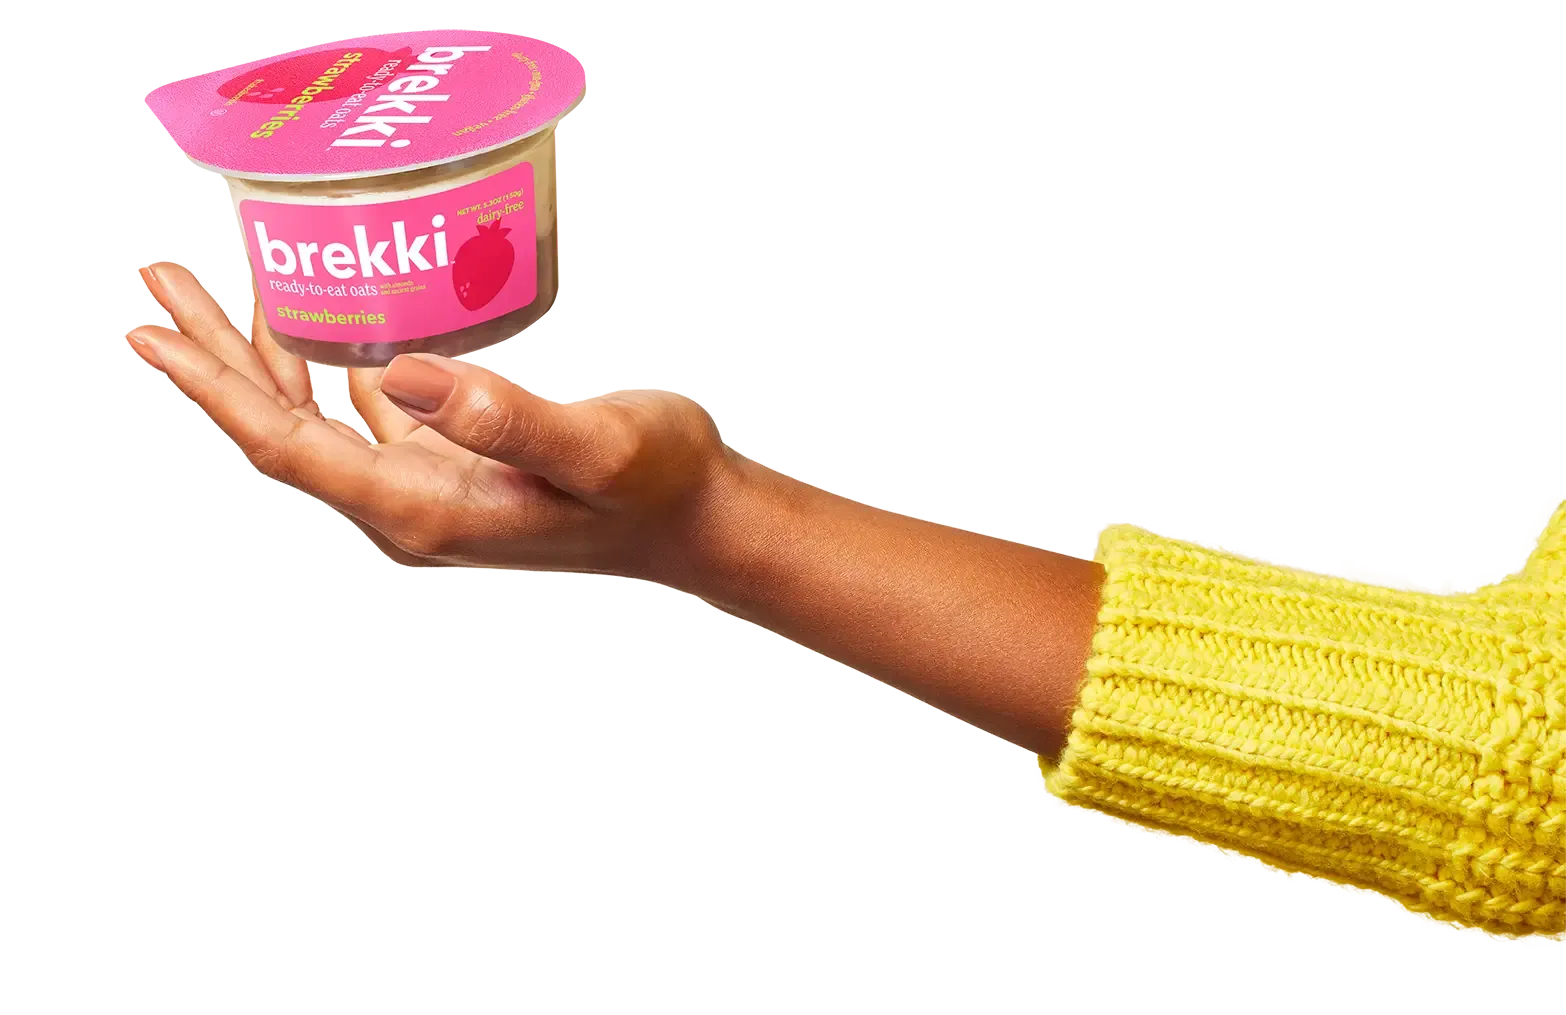 Take a brekki